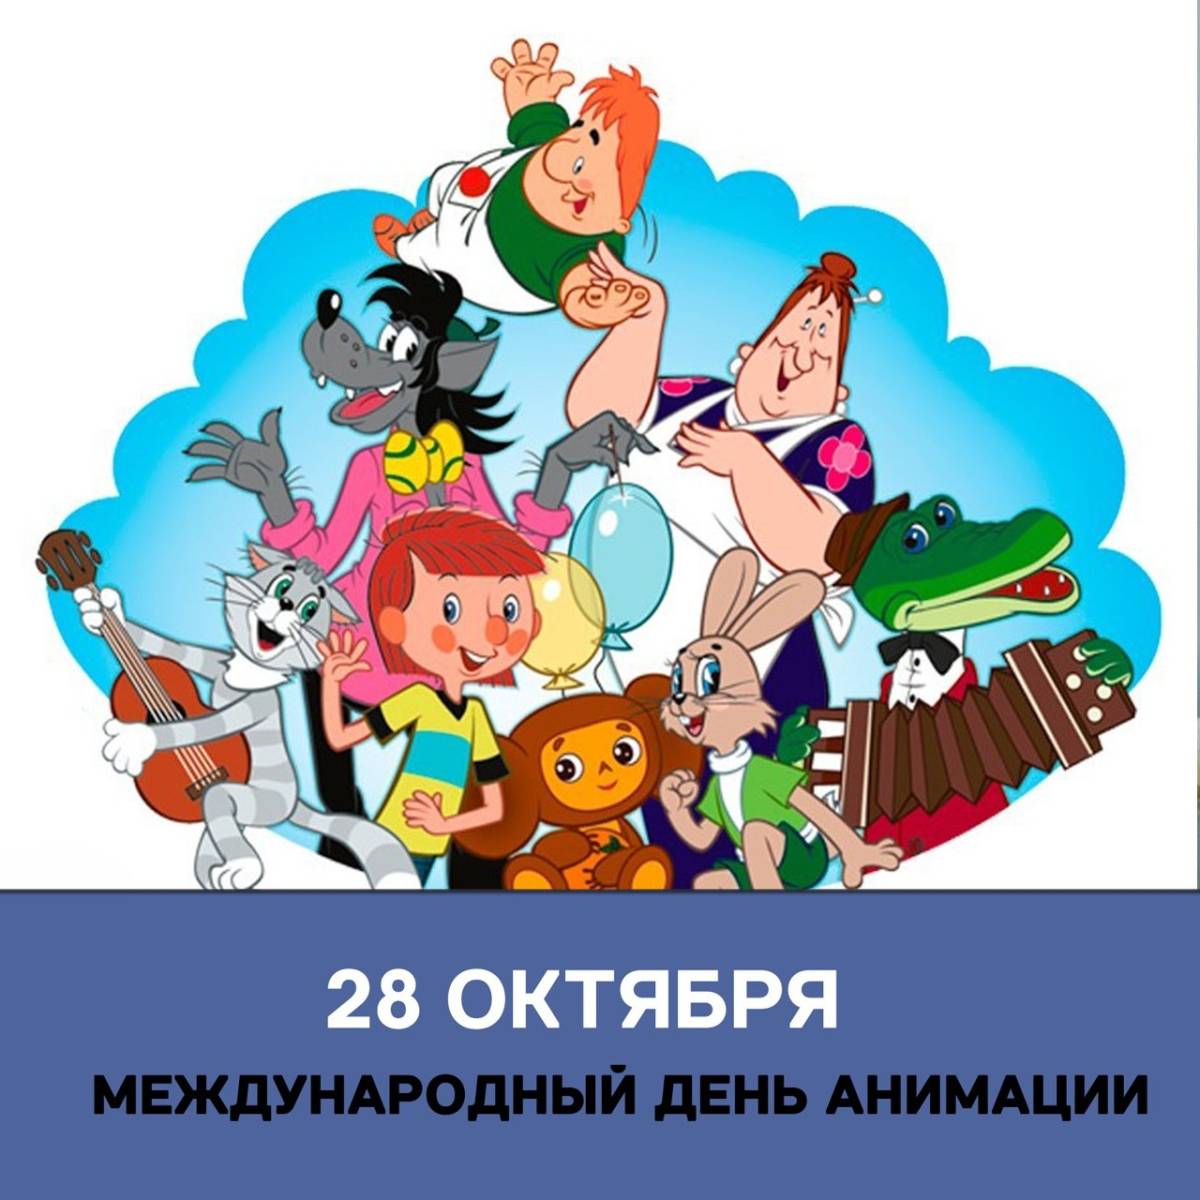 День анимации мероприятие. Международный день анимации. Всемирный день мультфильмов. Всемирный день анимации 28 октября. 28 Октября день мультфильмов.